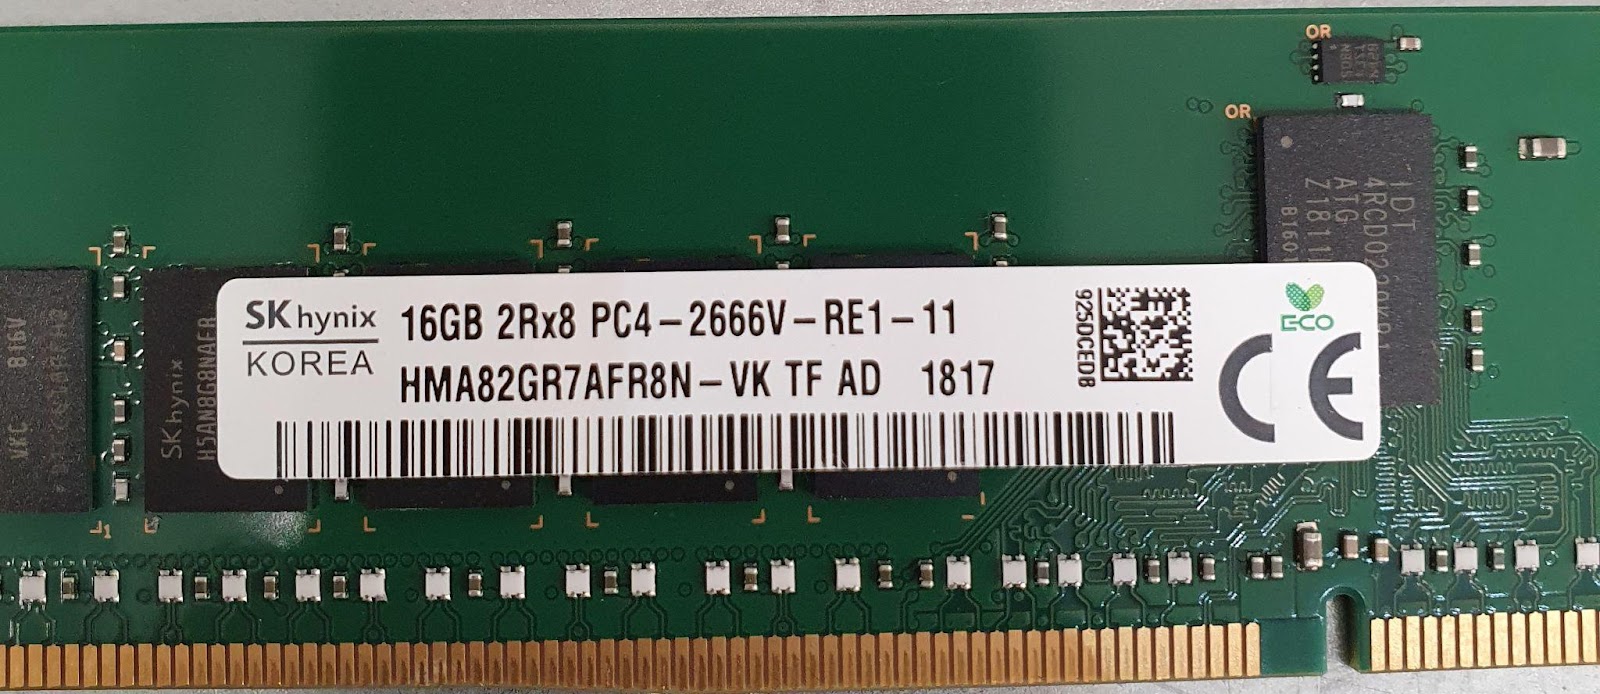 Замеряем зависимость производительности процессора AMD EPYC 7551 от установленной памяти - 3